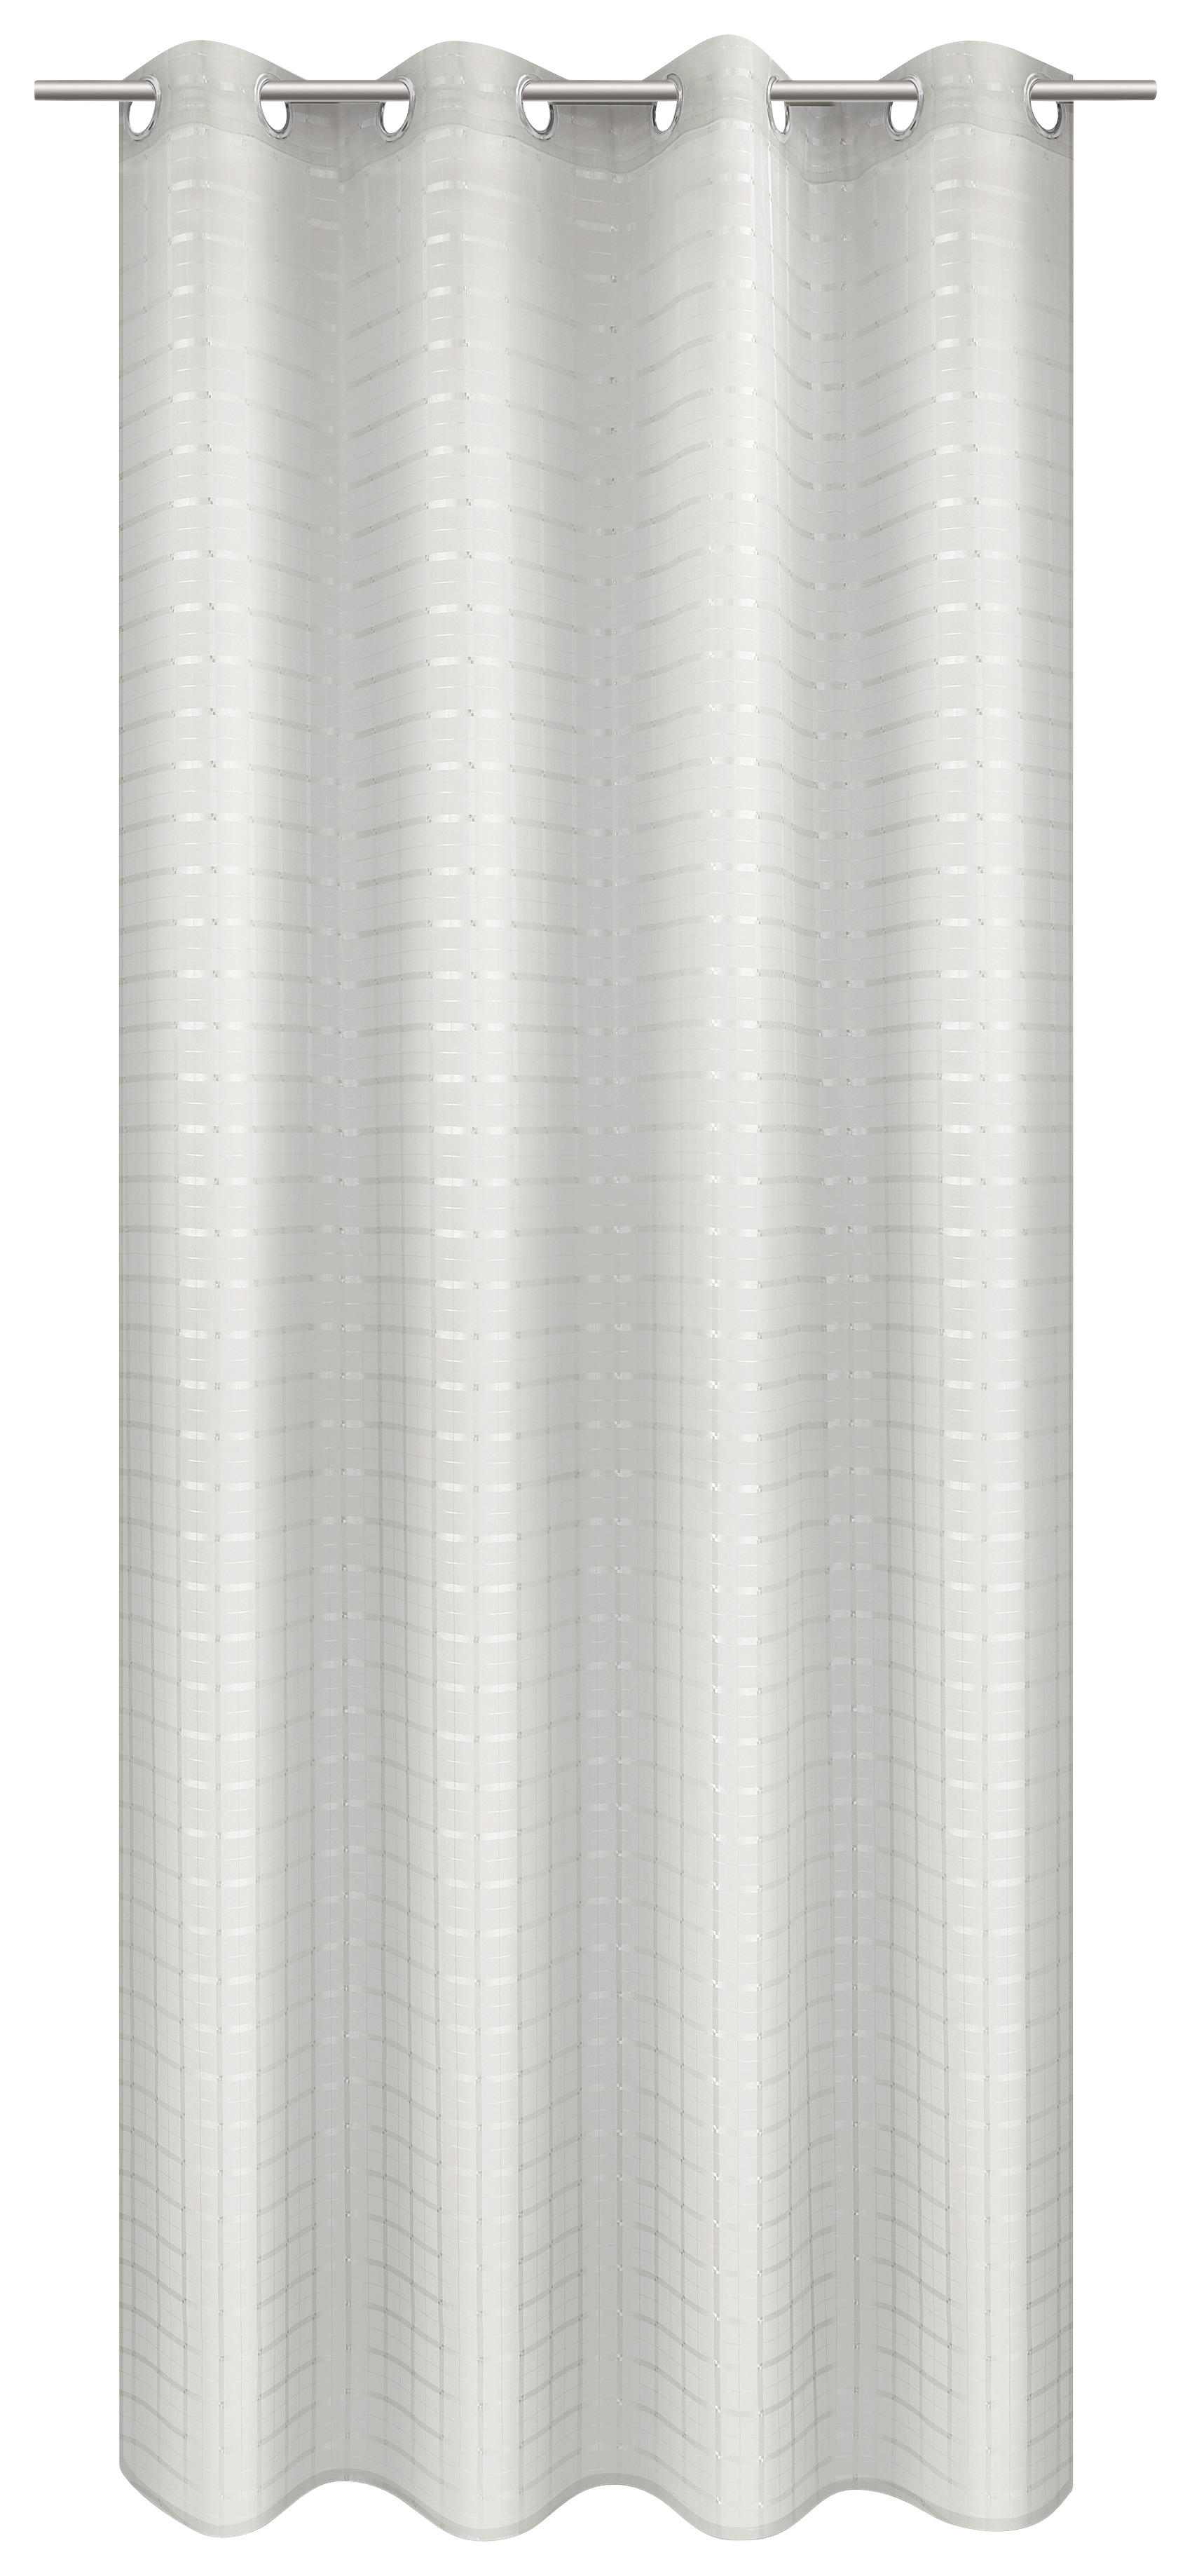 Ösenvorhang silber B/L: ca. 135x245 cm Ösenvorhang_Check - silber (135,00/245,00cm)